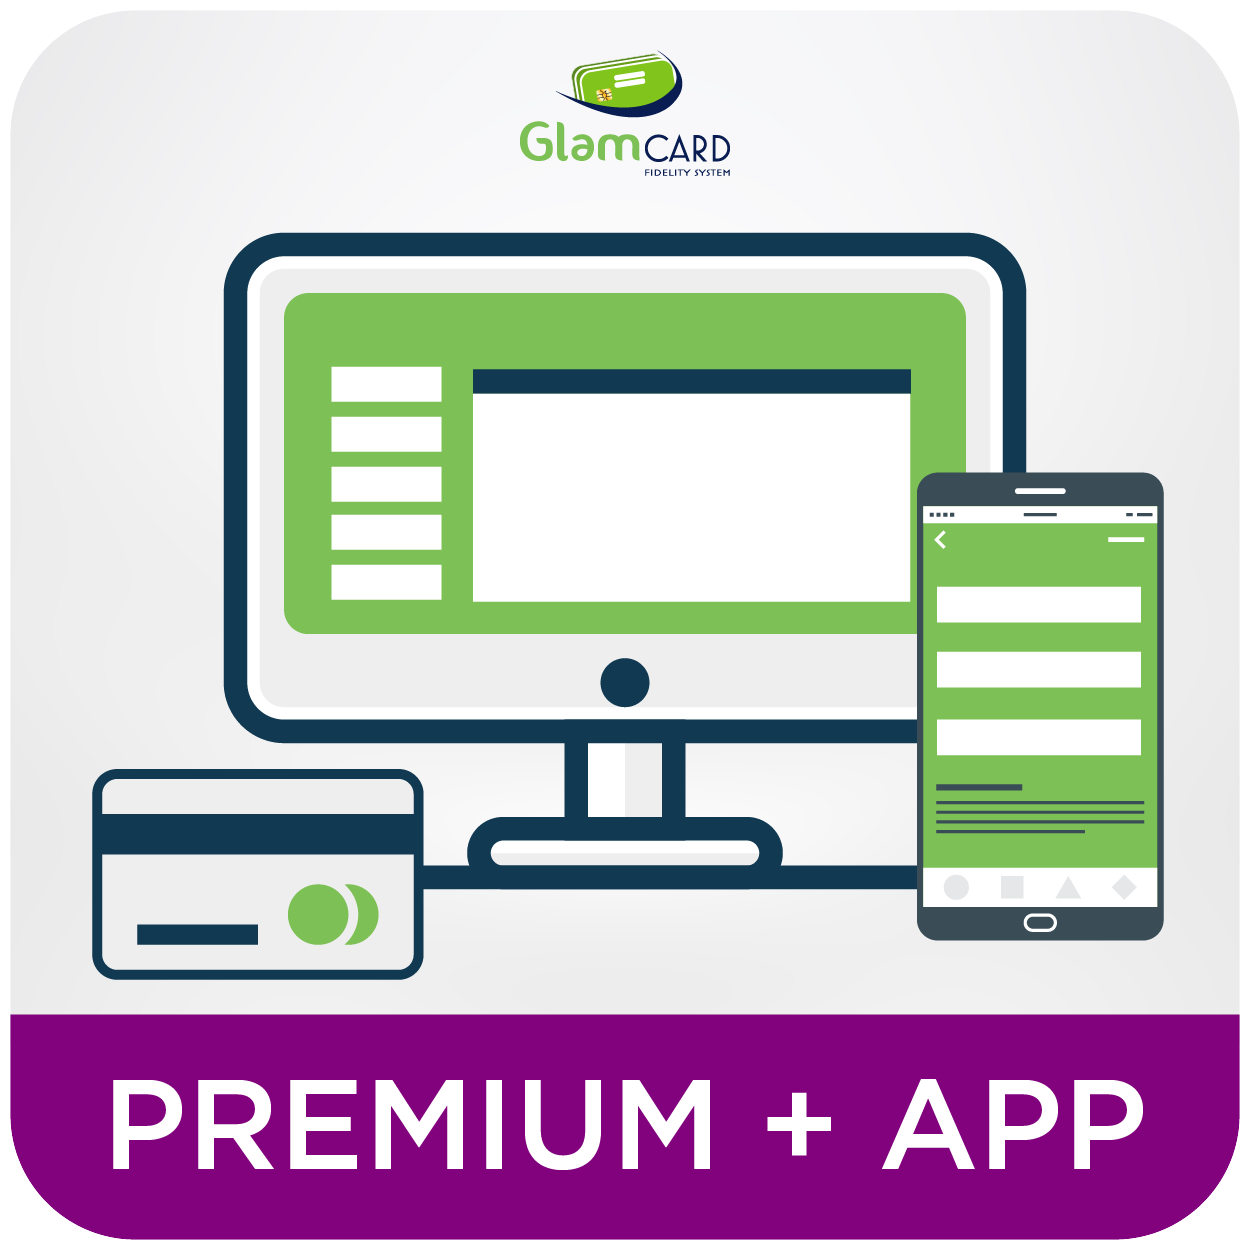 Premium + App